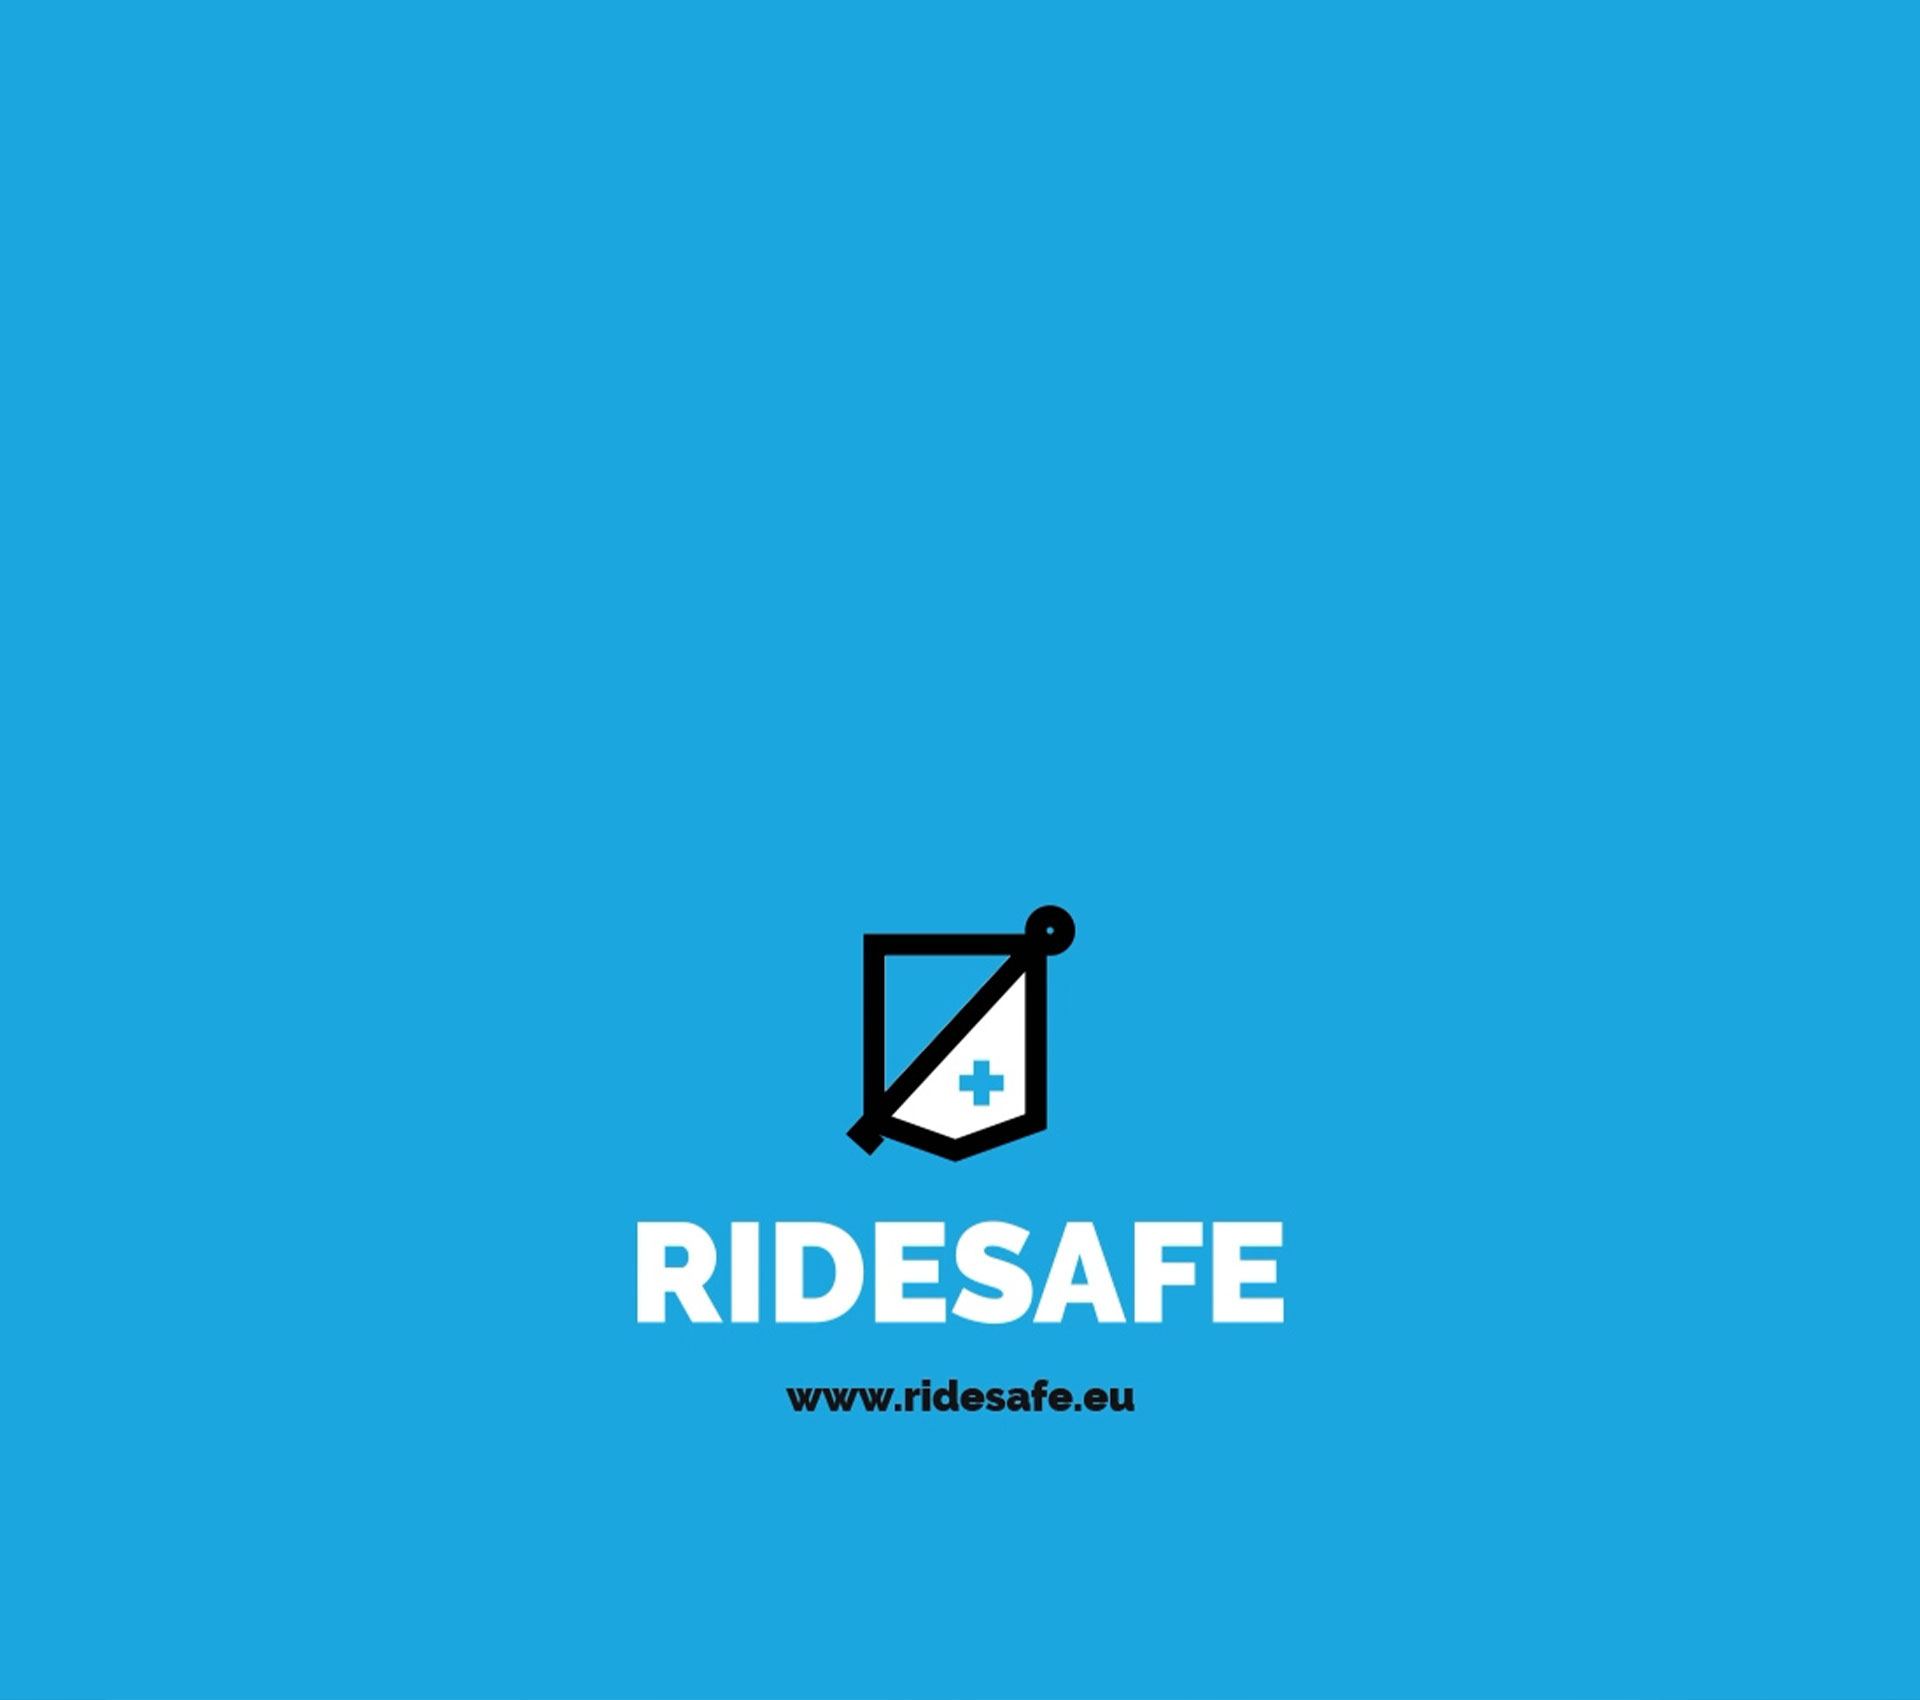 Ride Safe